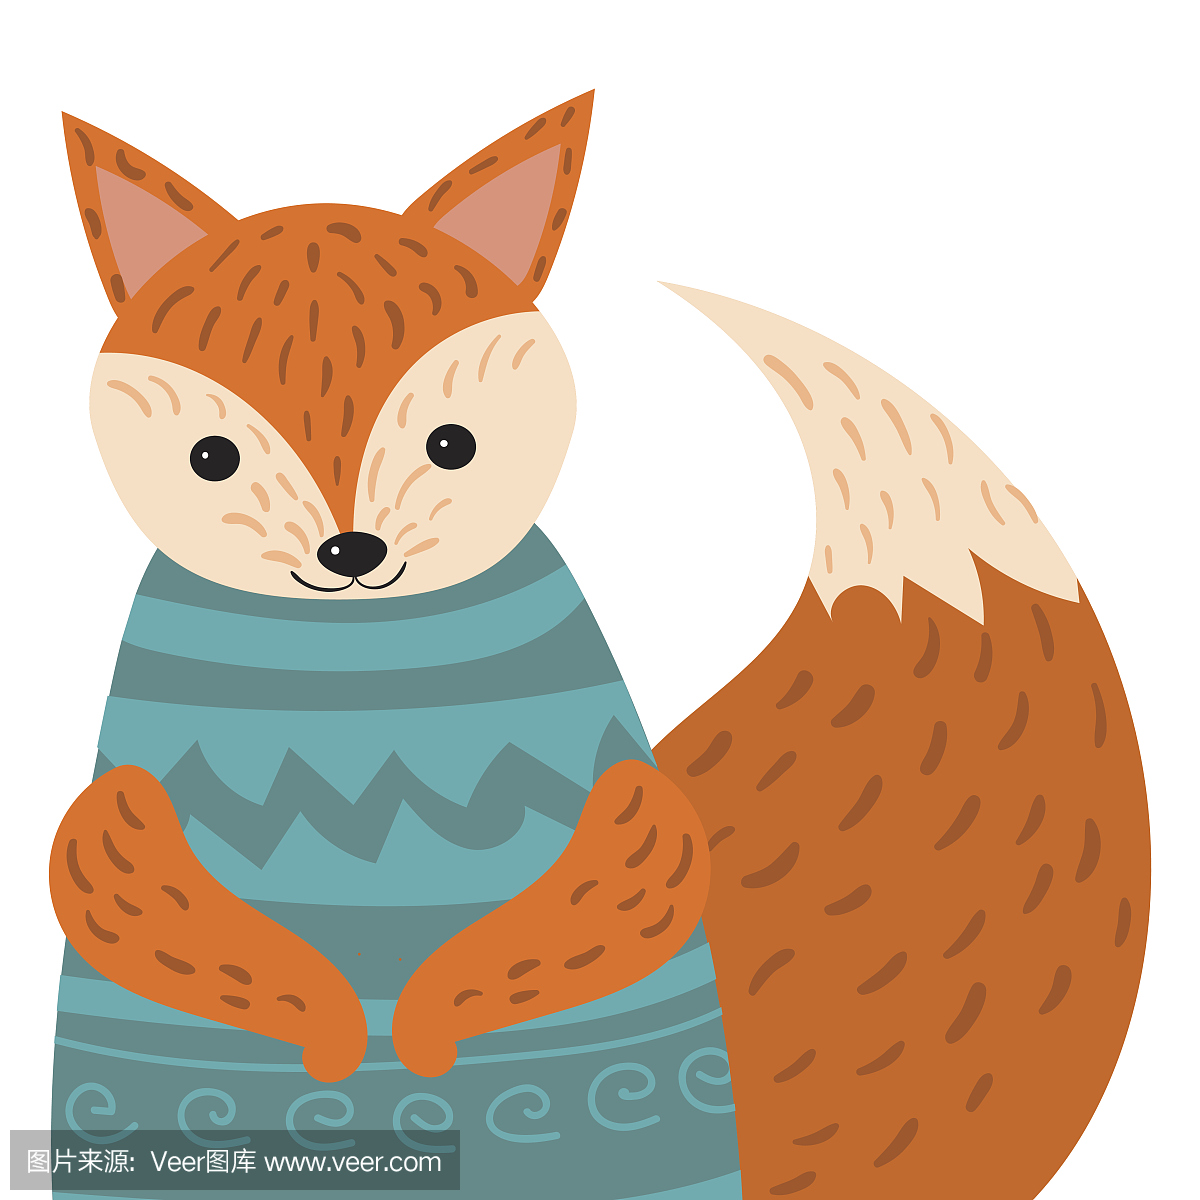 ortrait of a fox. Stylized happy fox in sweater. D